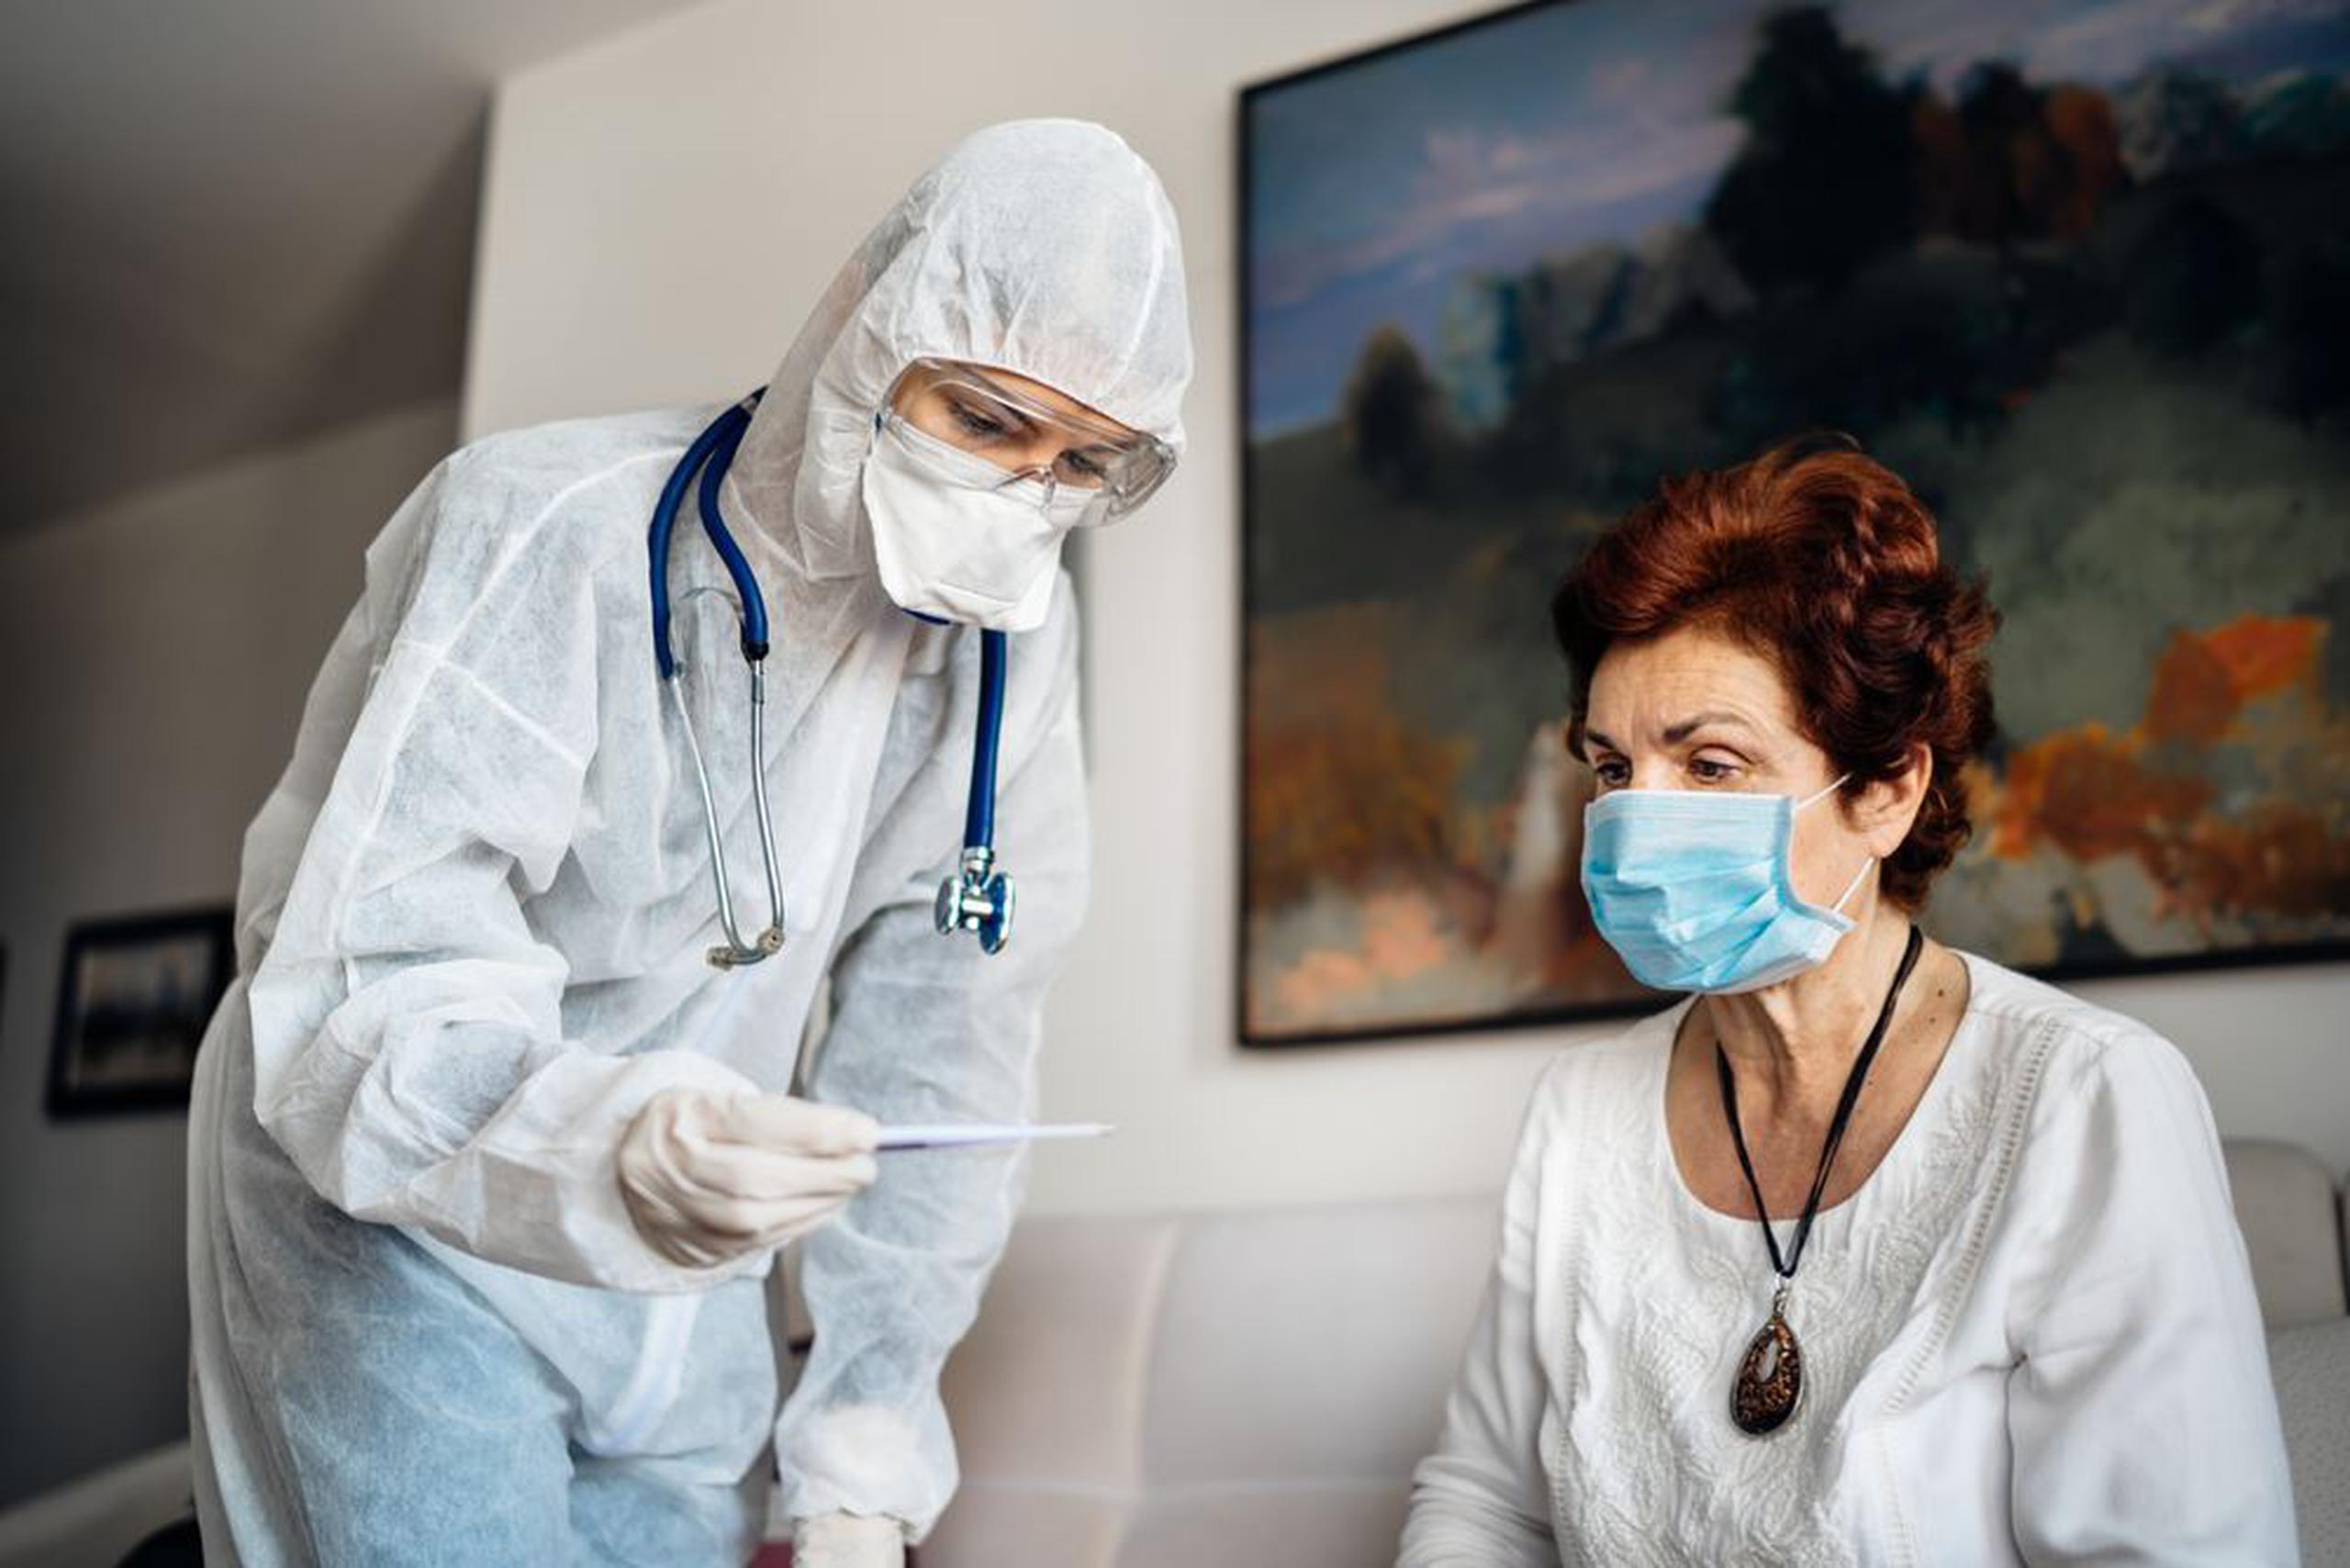 Muchos servicios de salud que se ofrecen en la casa buscan disminuir el riesgo de contagio con Covid-19 y mantener en buen estado la salud del paciente. (Shutterstock)